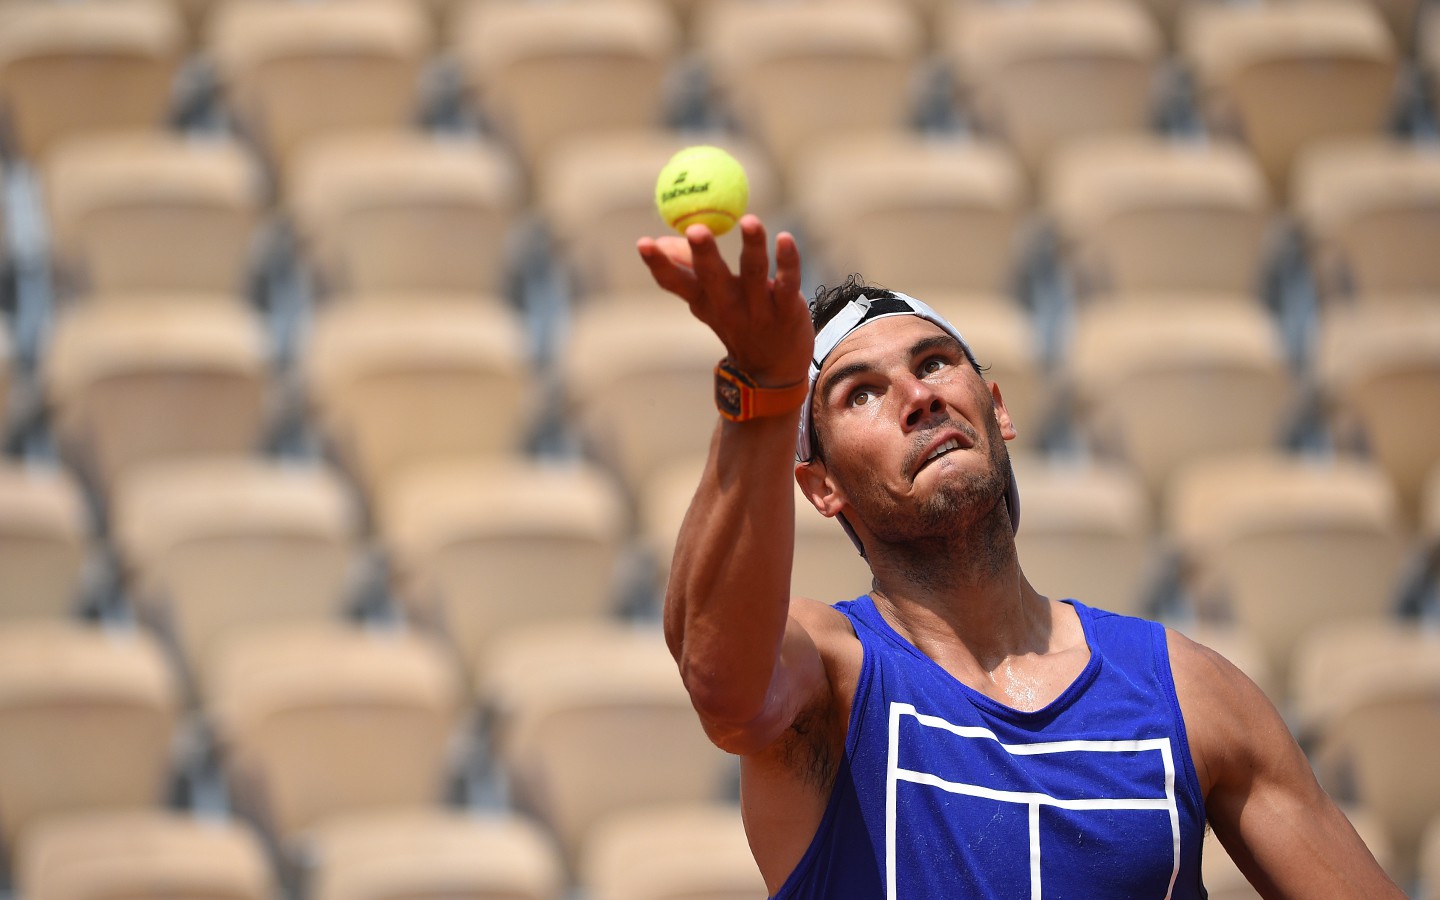 Tập luyện cật lực, Nadal đặt tham vọng ở cả Wimbledon 2018 - Ảnh 2.